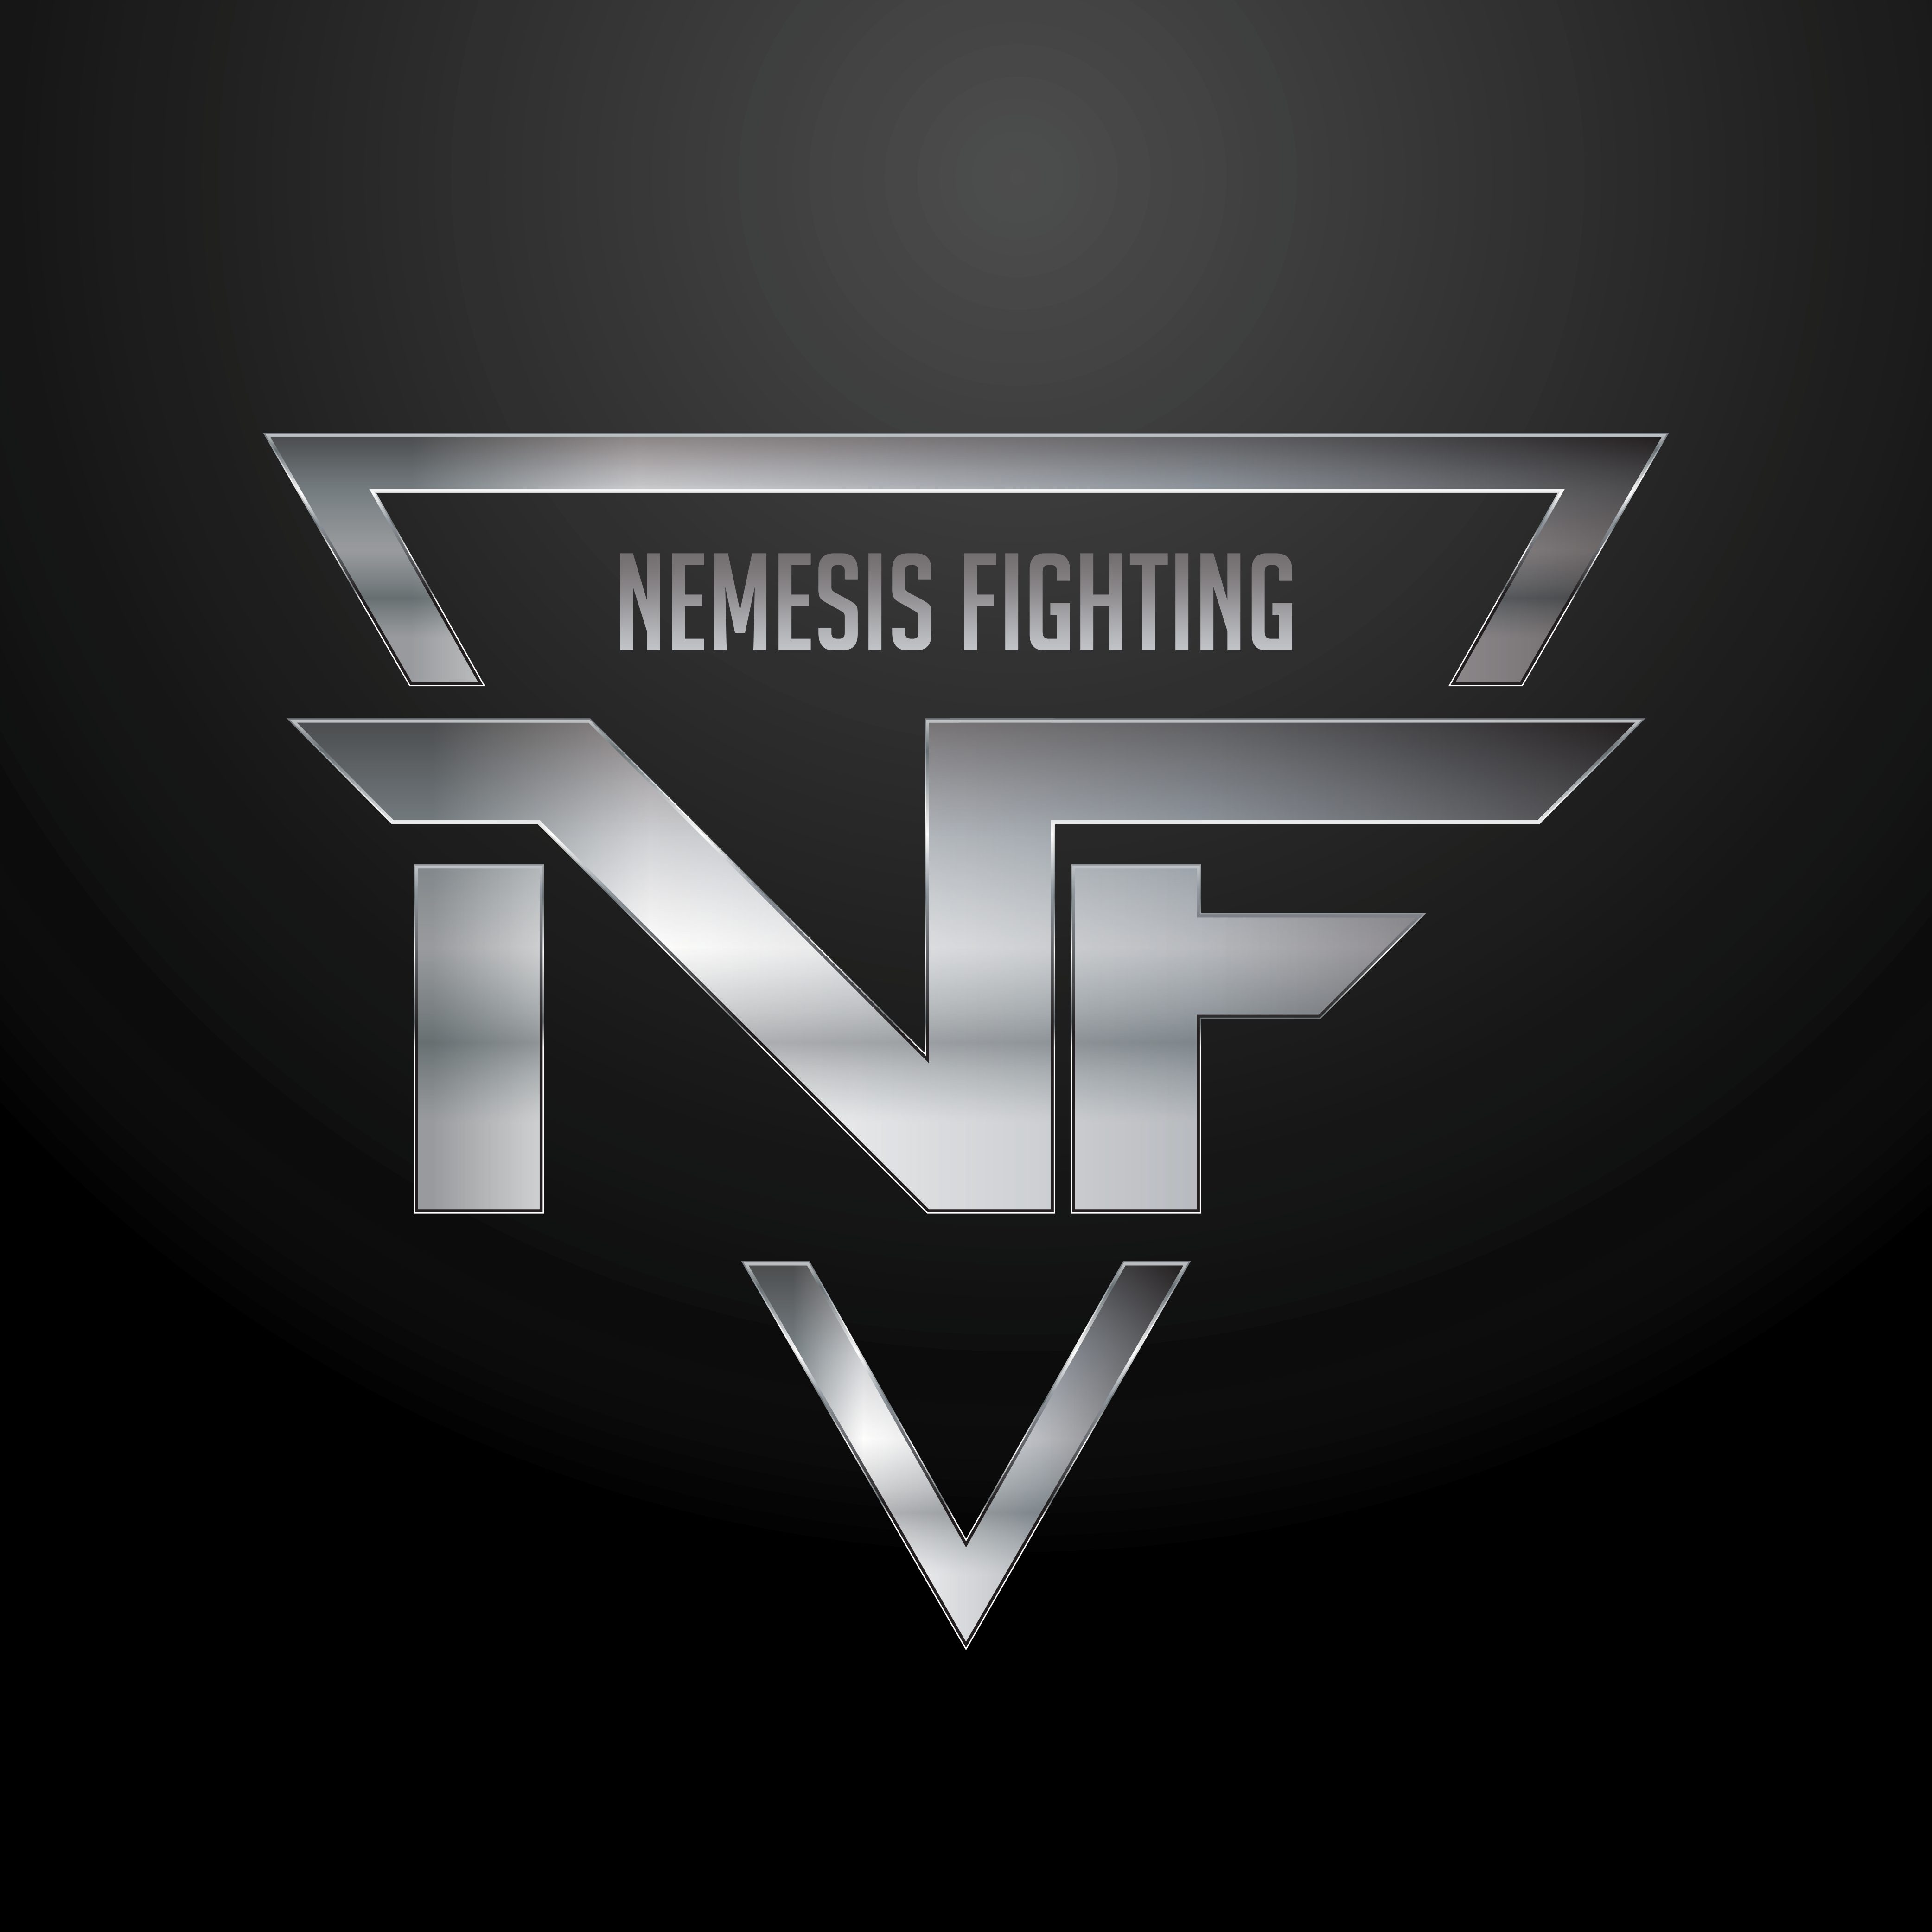 Nemesis Fighting logo - 1 (1)